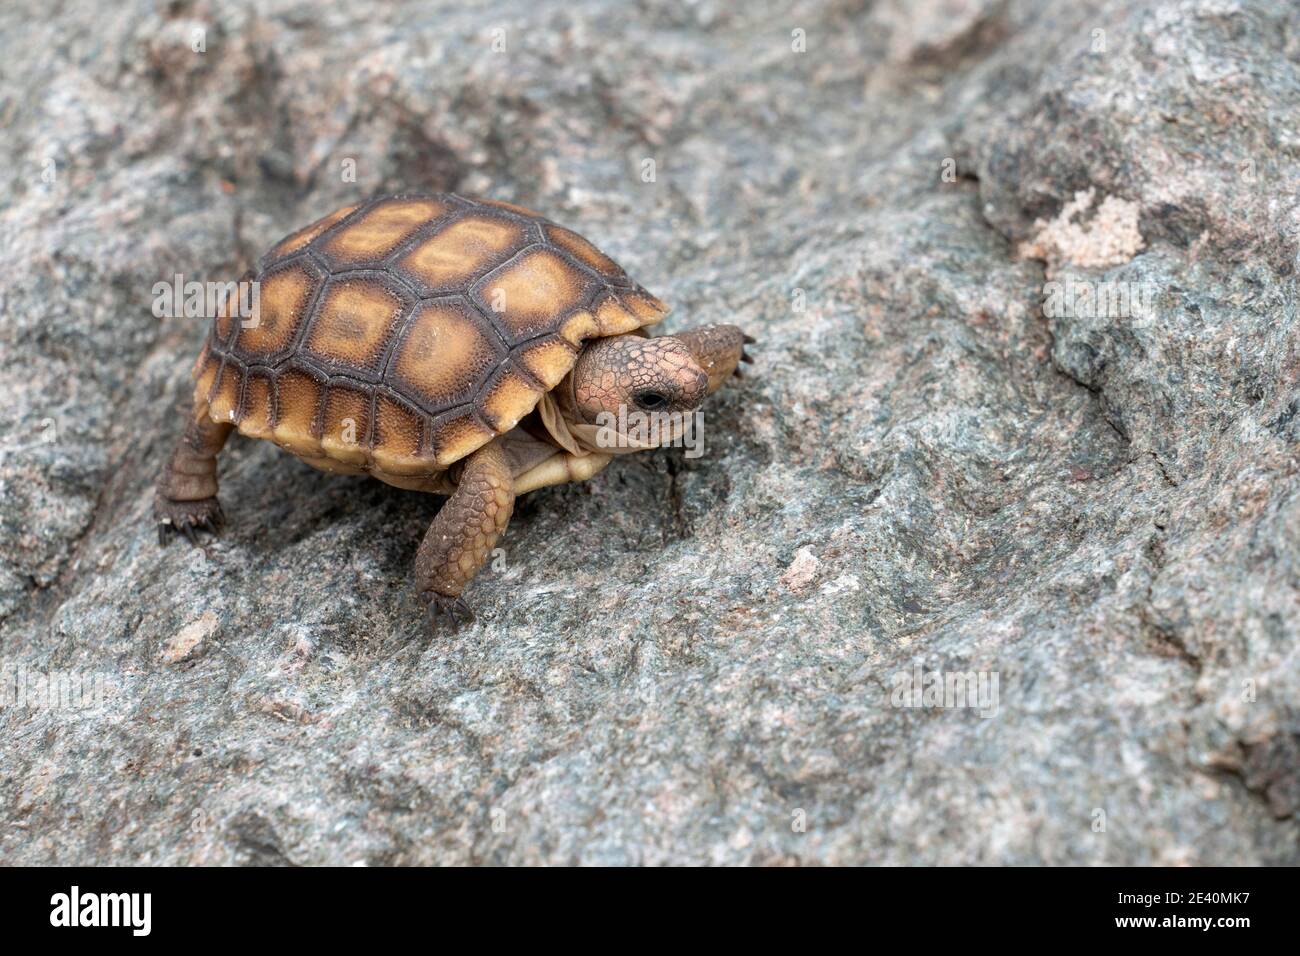 Tartaruga del deserto giovanile (Gopherus agassizii) che cammina sulla roccia, deserto di Mojave, California, Stati Uniti. La tartaruga è lunga circa 8 cm. Foto Stock